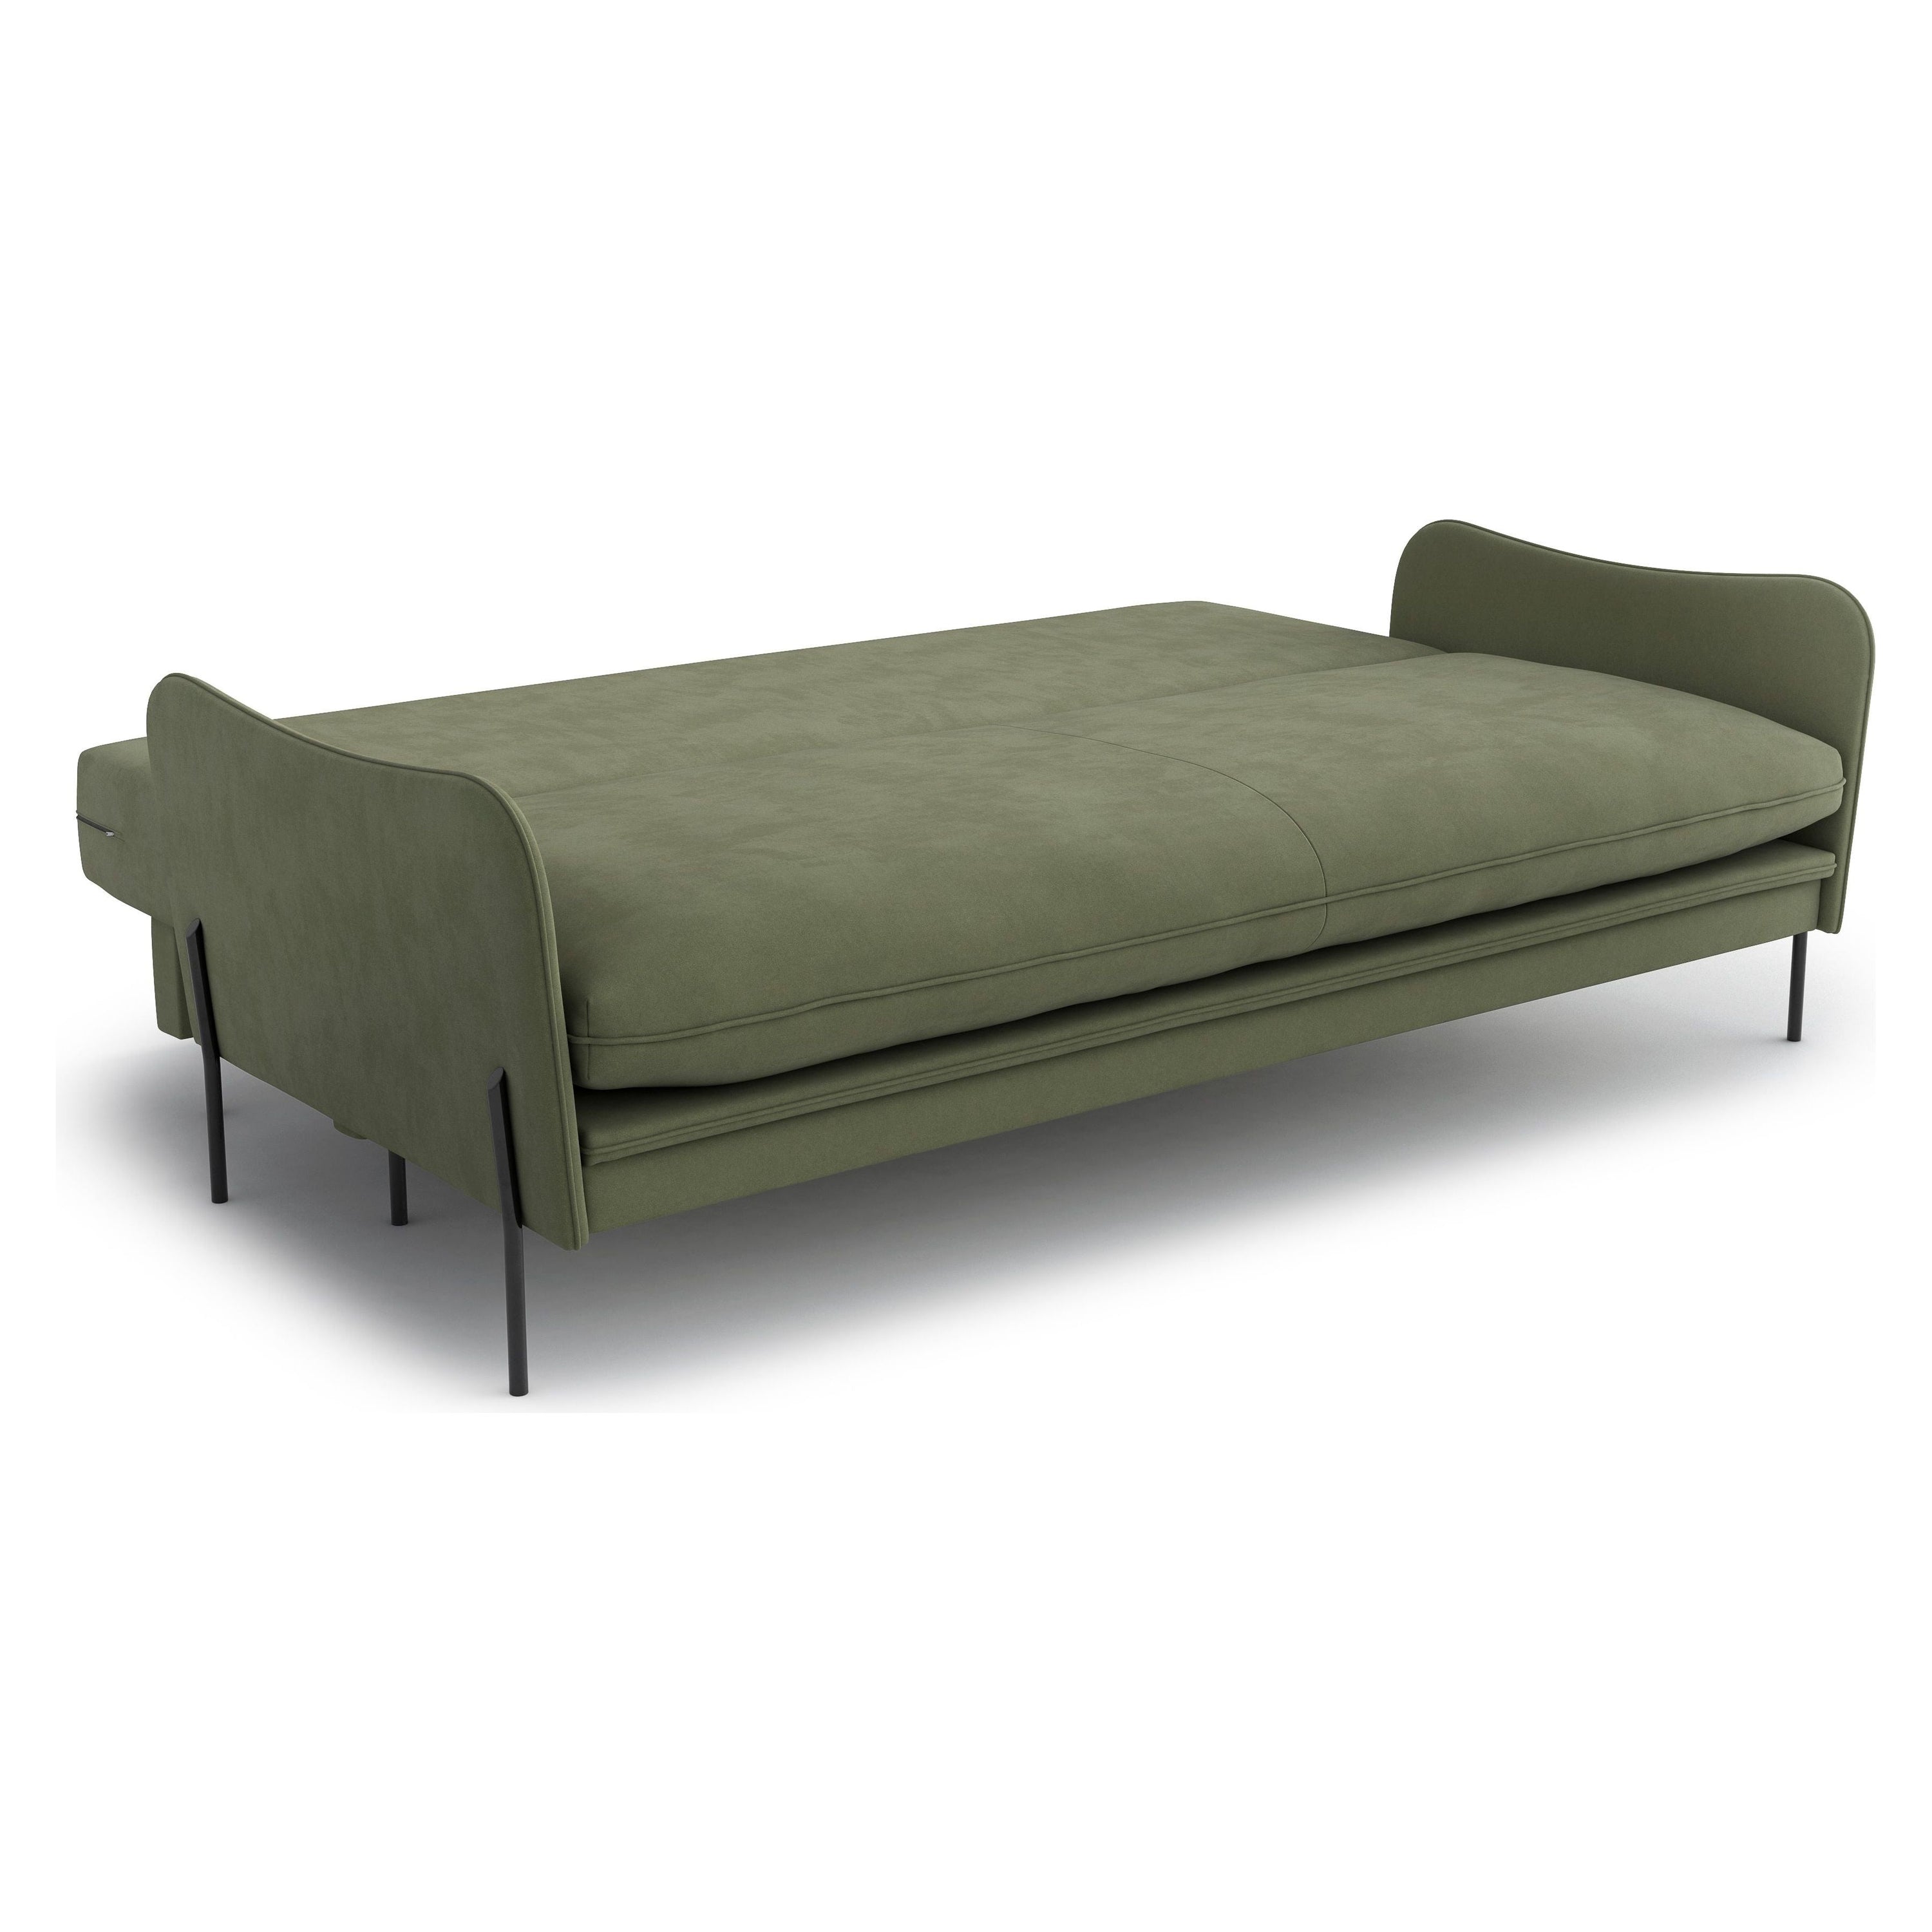 3 vietų sofa lova BONNIE , žalia spalva